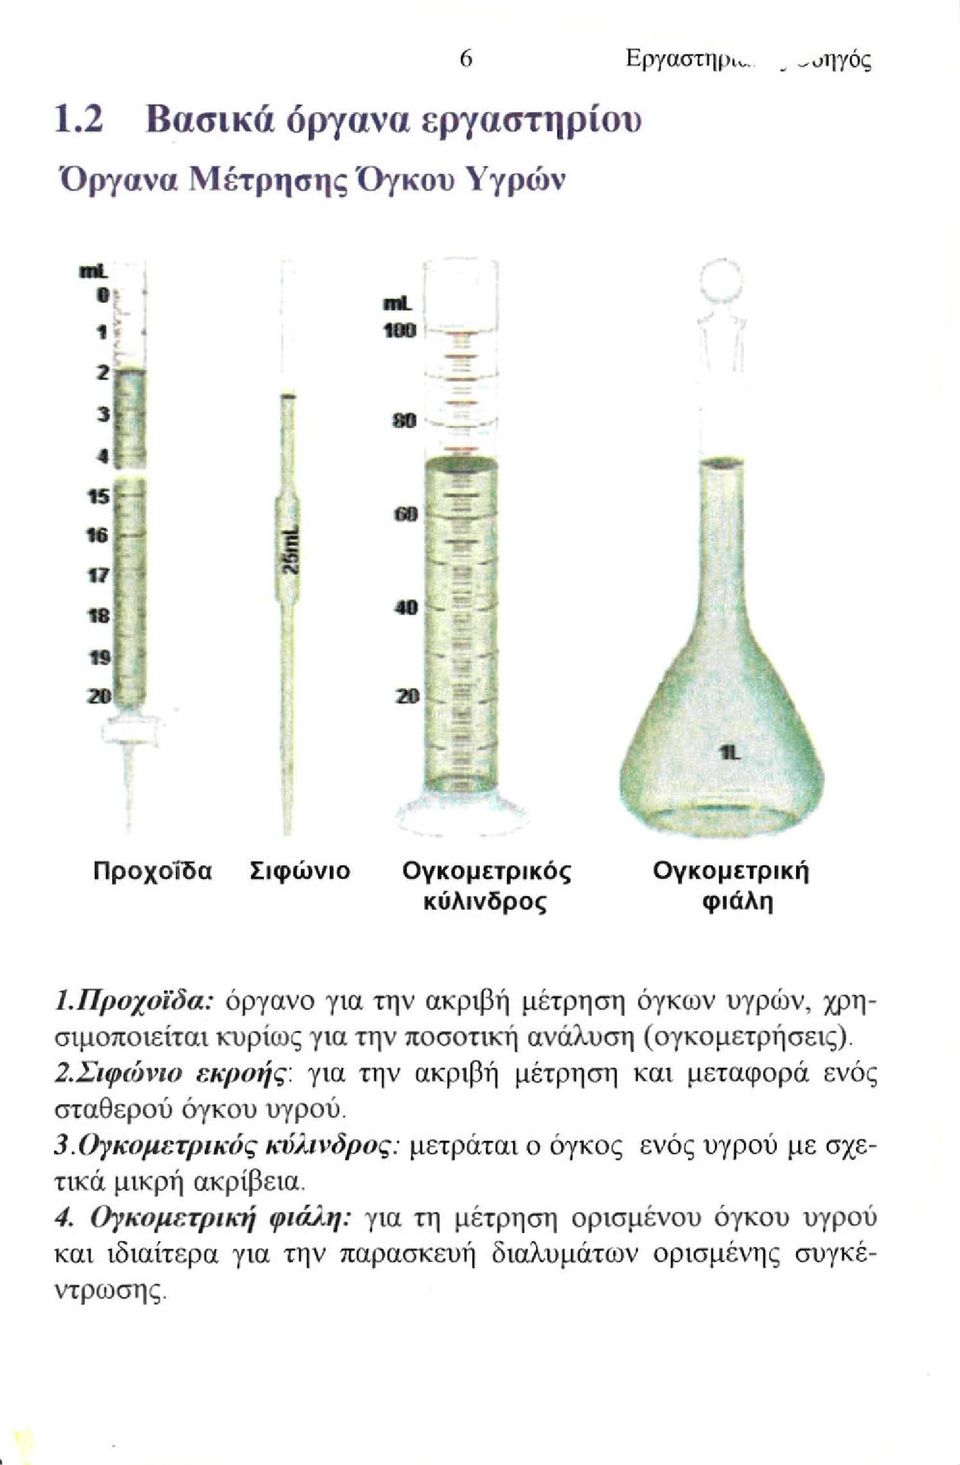 Προχοΐδα: όργανο για την ακριβή μέτρηση όγκων υγρών, χρησιμοποιείται κυρίως για την ποσοτική ανάλυση (ογκομετρήσεις). 2.